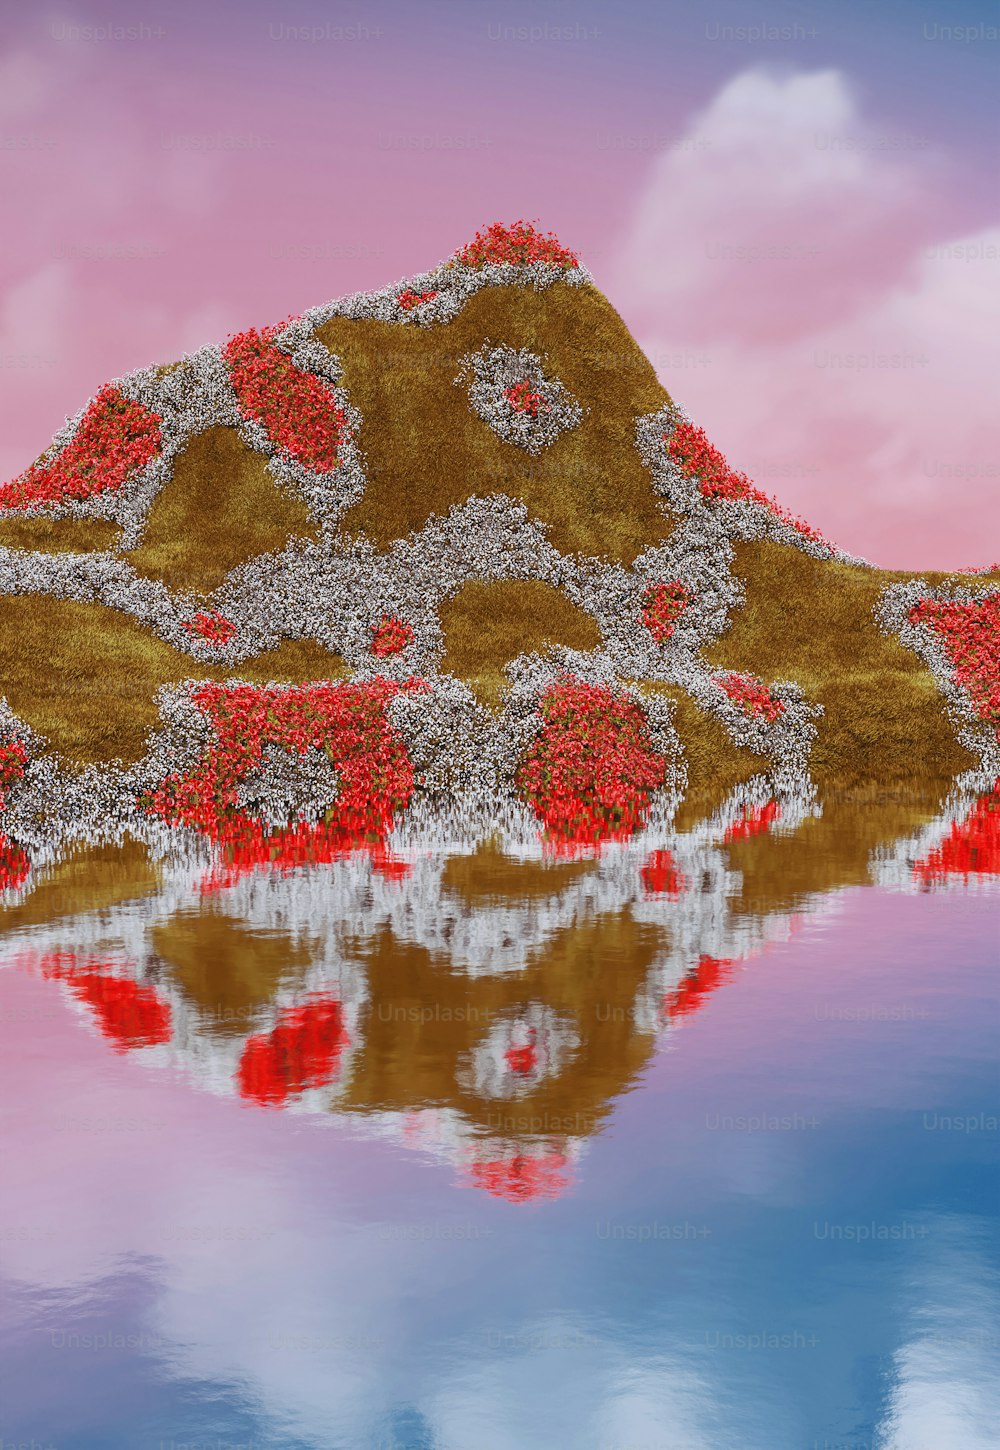 赤い花が咲いた山の絵